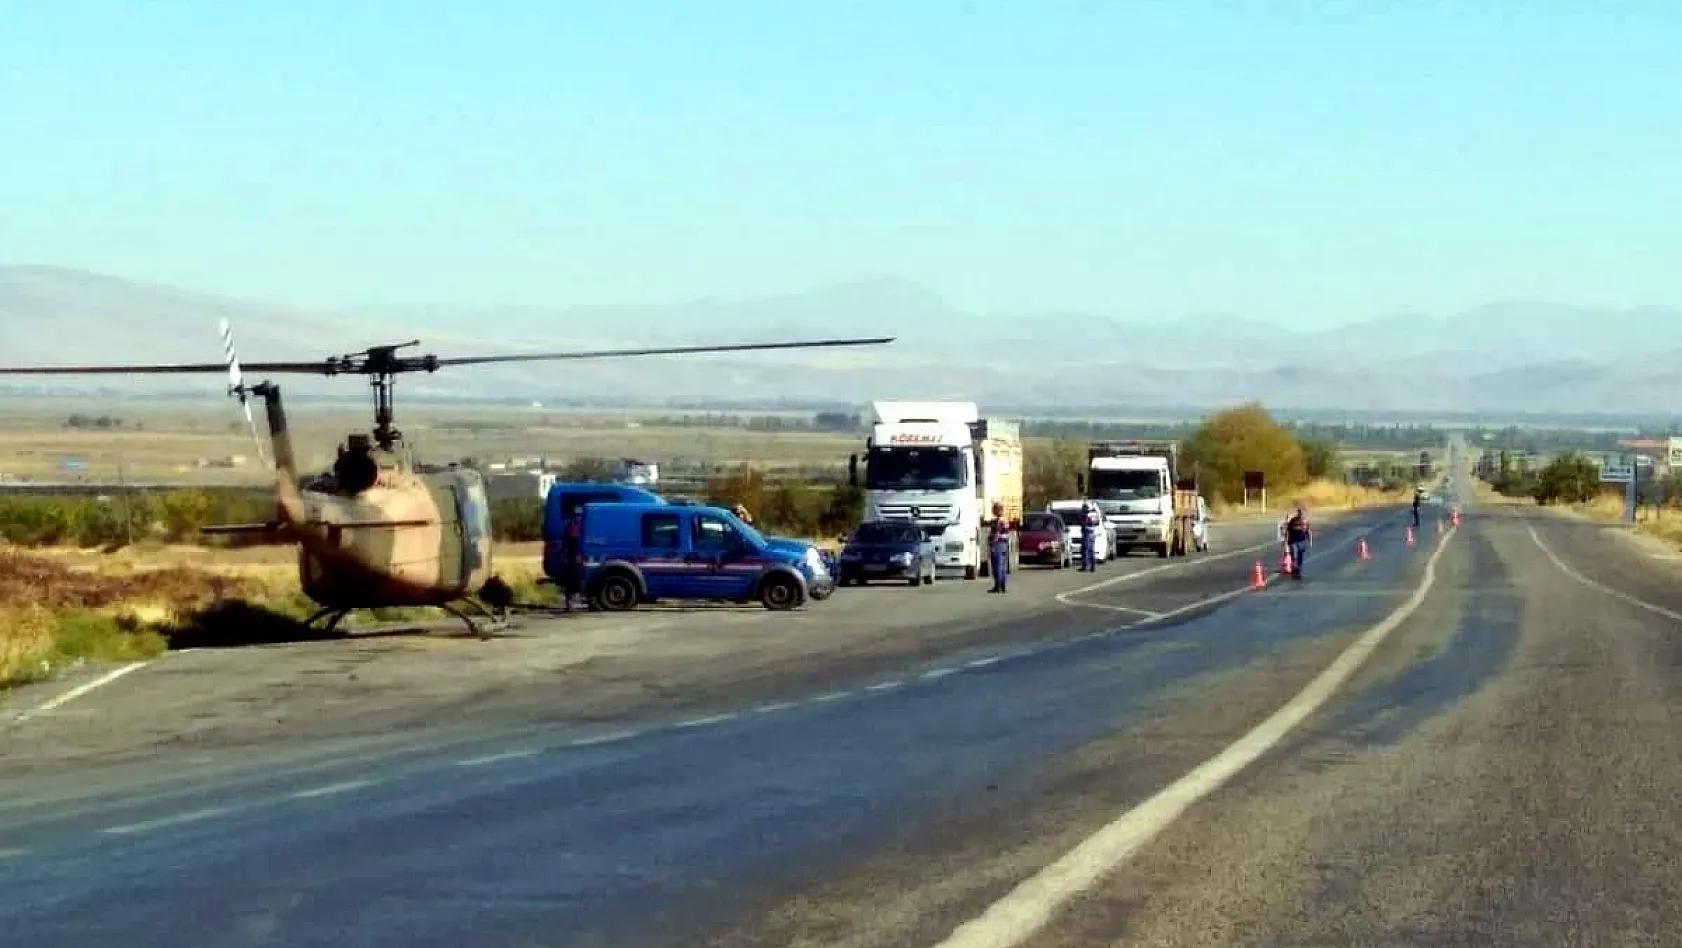 Jandarmadan helikopter destekli trafik denetimi